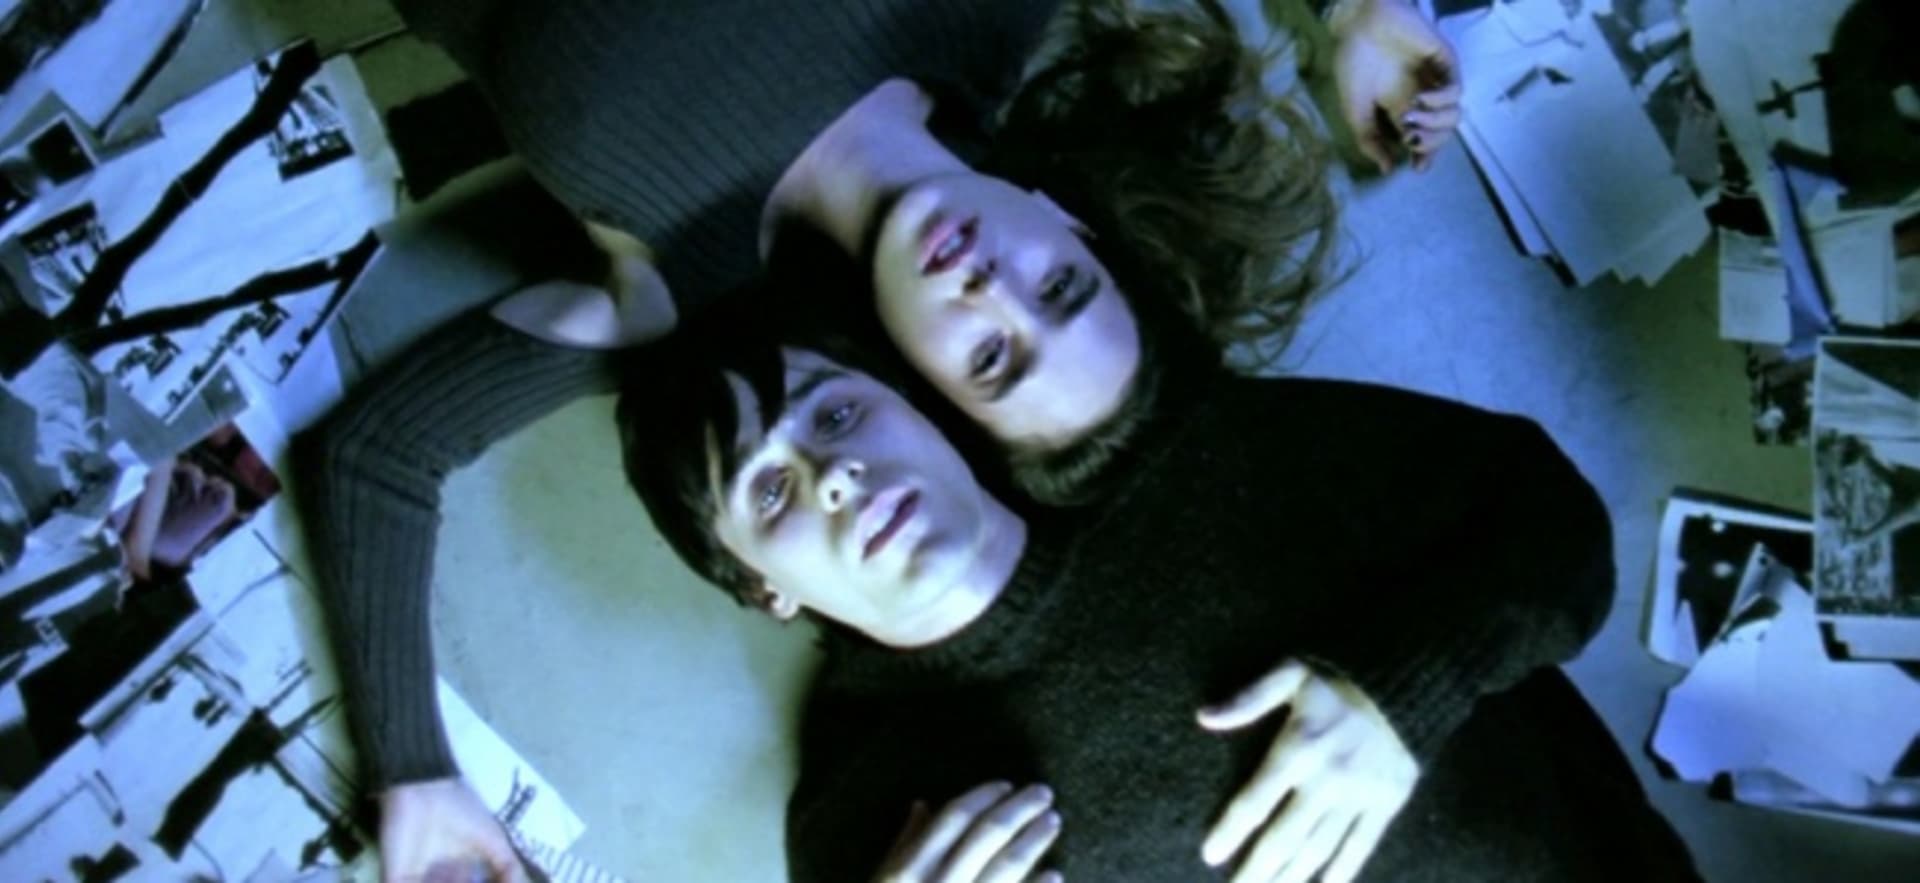 Requiem za sen je mrazivý snímek o uživatelích drog.